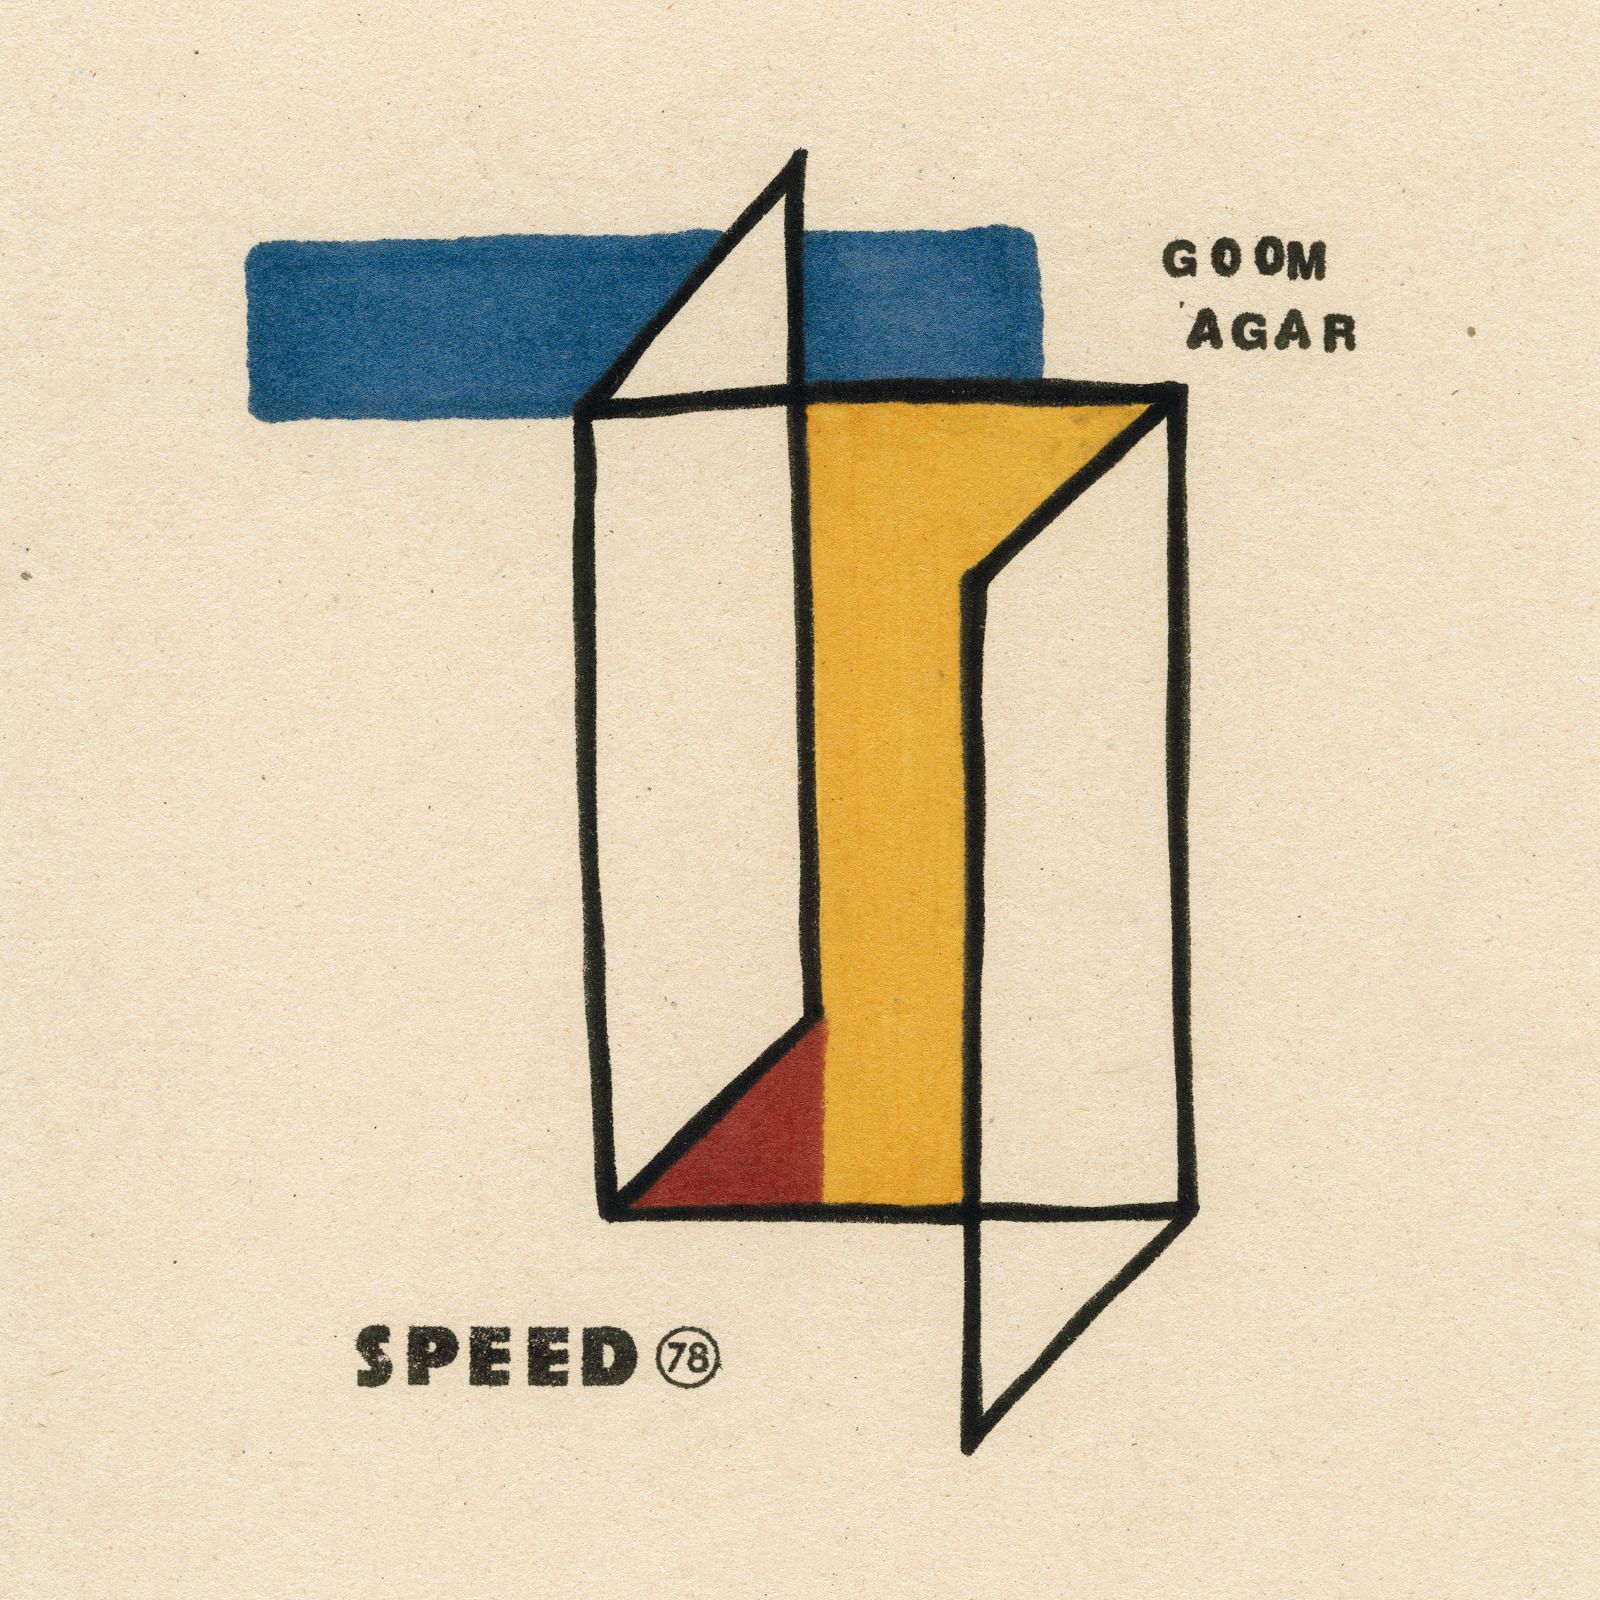 Speed 78 Goom Agar (lp+cd)